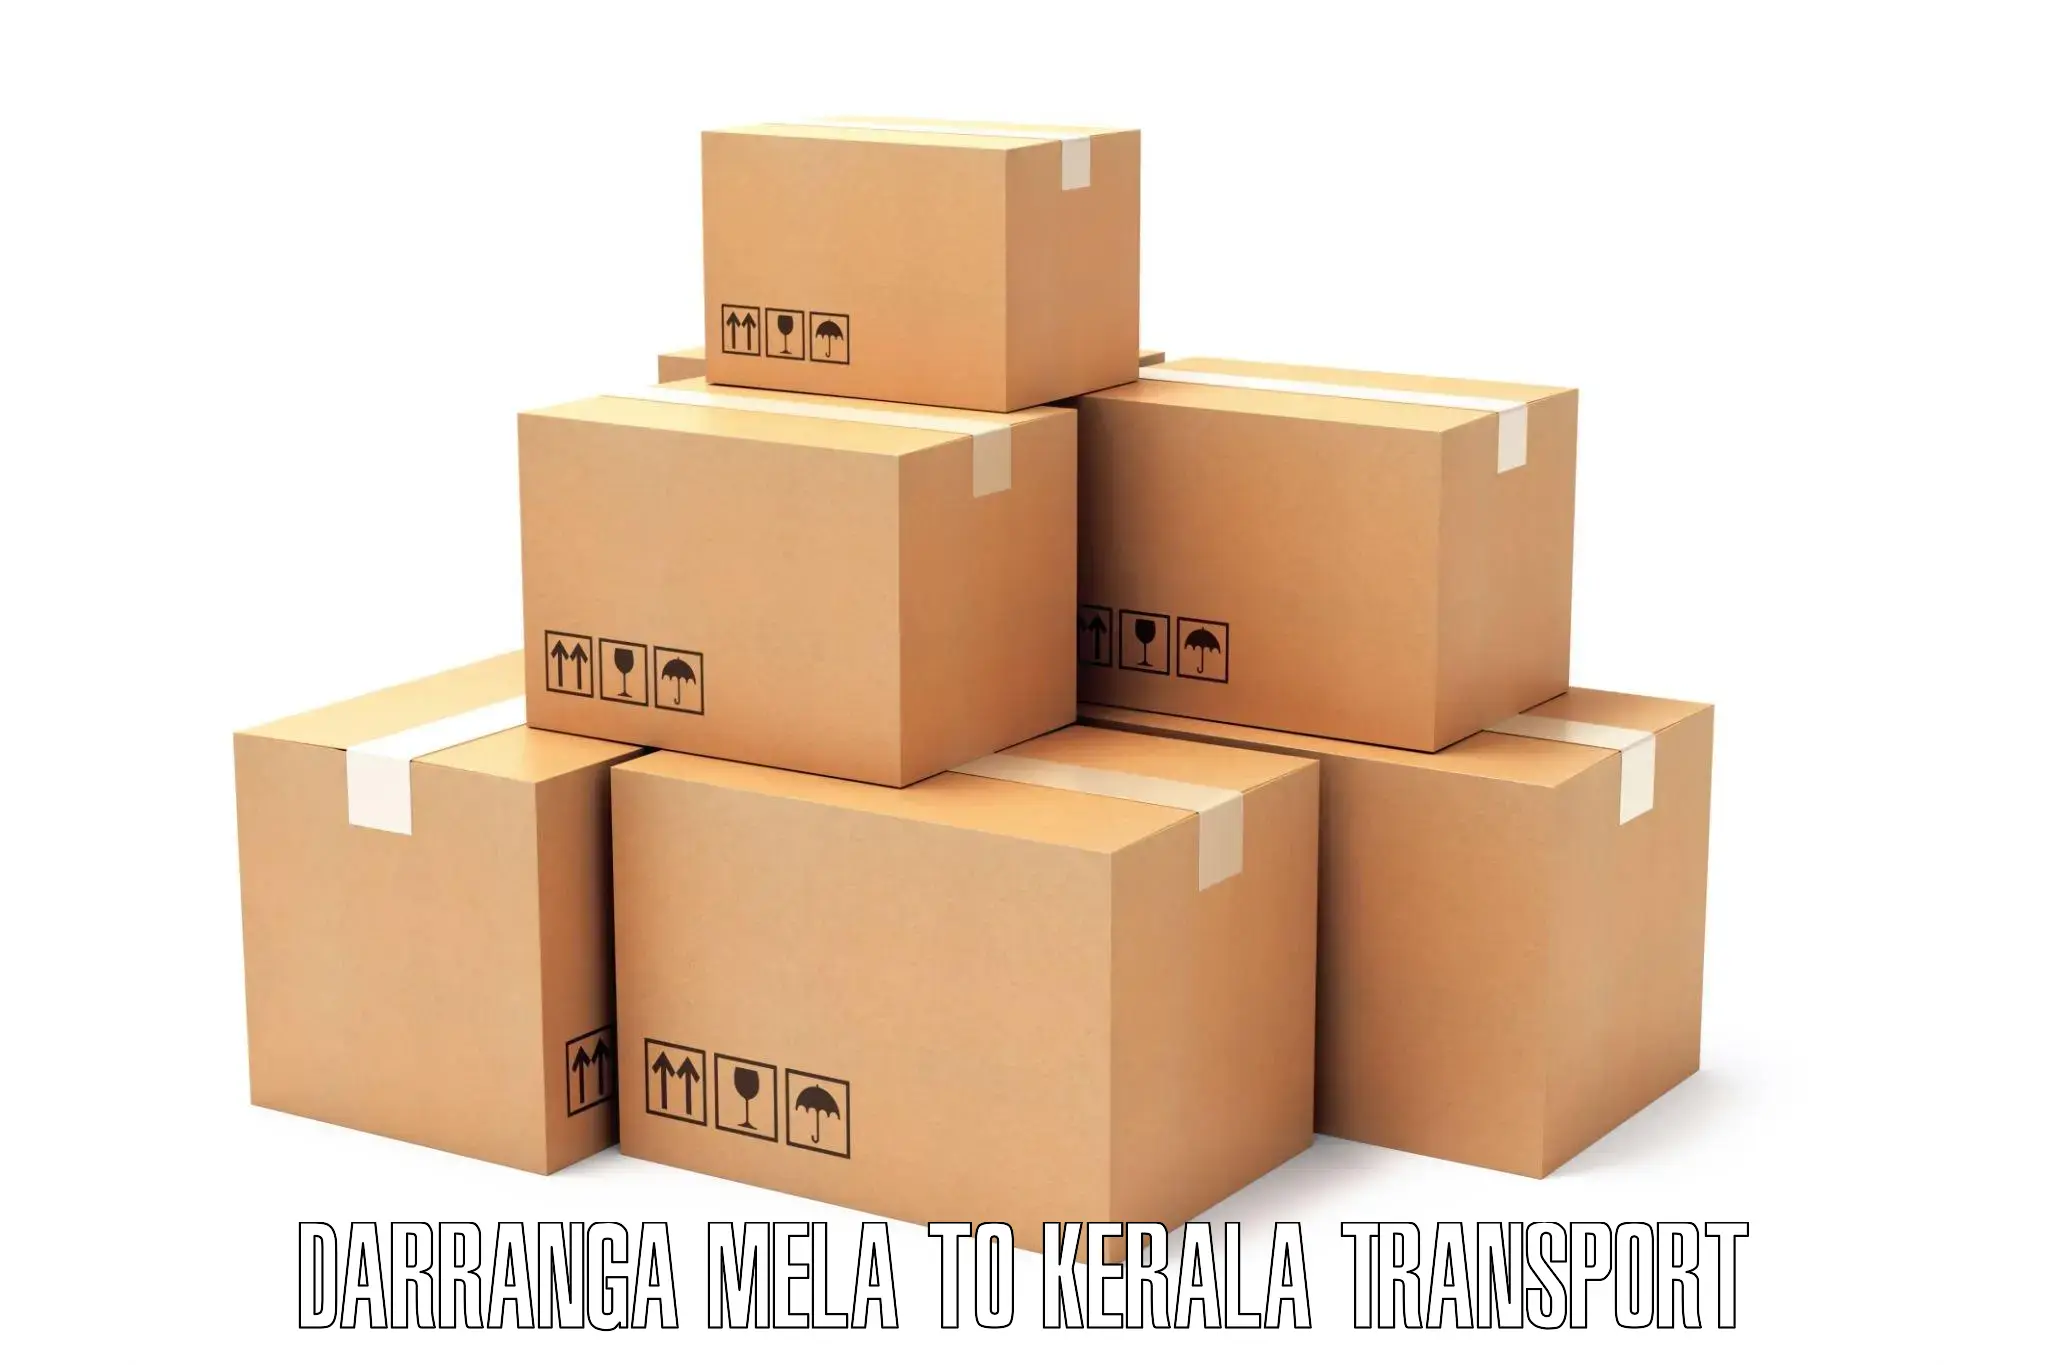 Transportation solution services Darranga Mela to Ponekkara